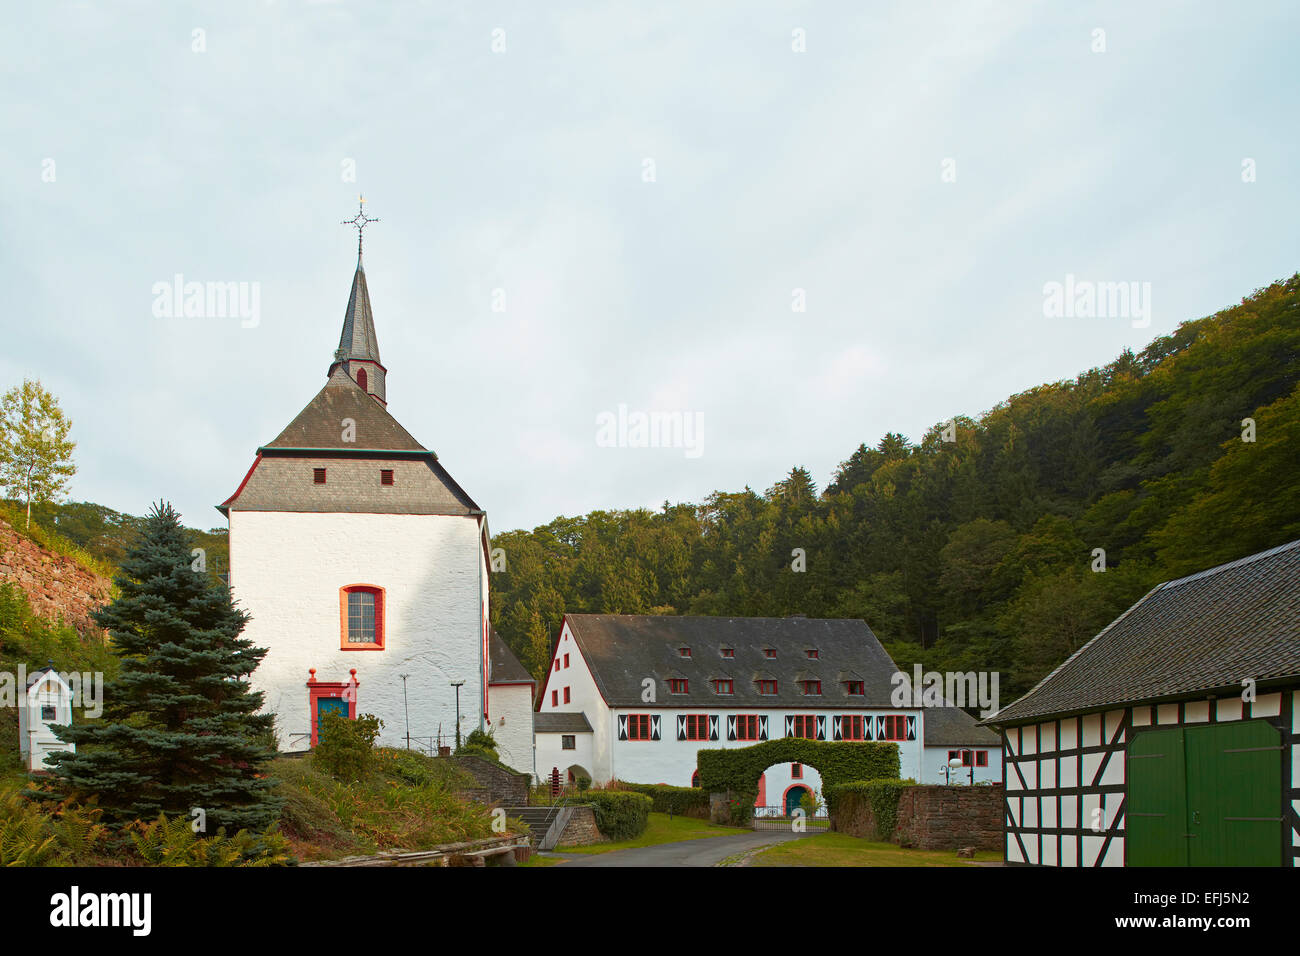 Monastery, Kloster Ehrenstein, Asbach-Ehrenstein, Rhineland-Palatinate, Germany, Europe Stock Photo